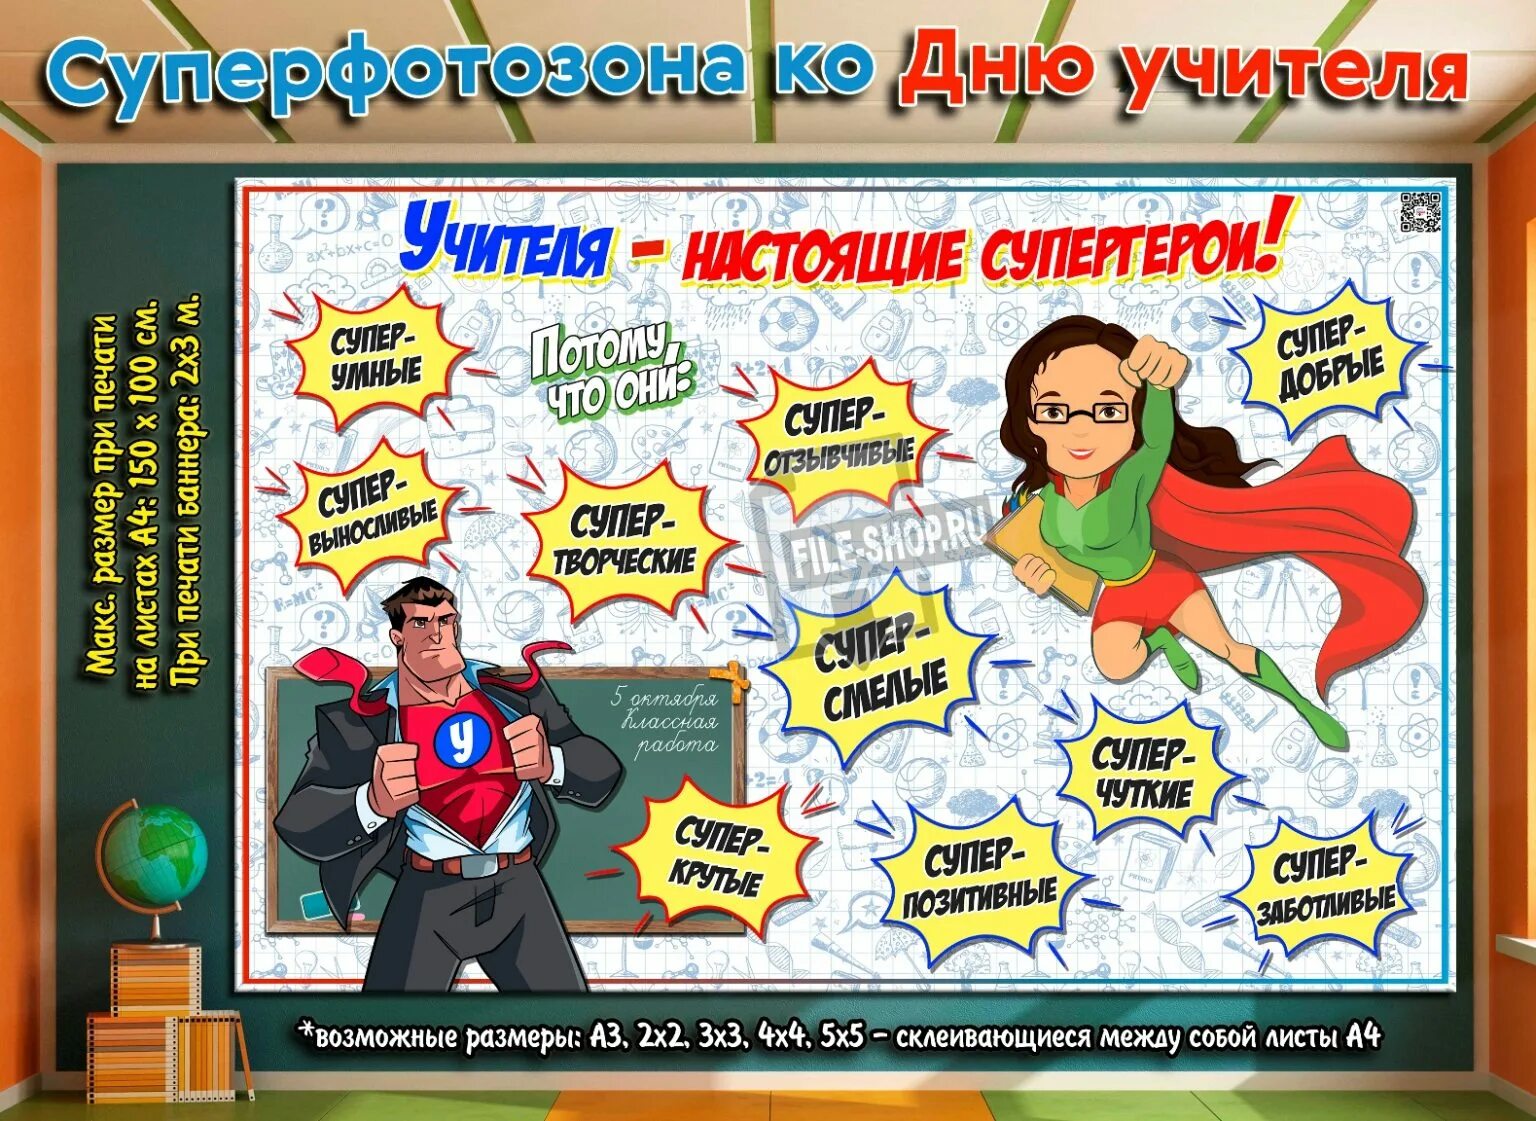 Плакат "с днем учителя!". Фотозона на день учителя. Учителя Супергерои. Учитель Супергерой. Super teachers